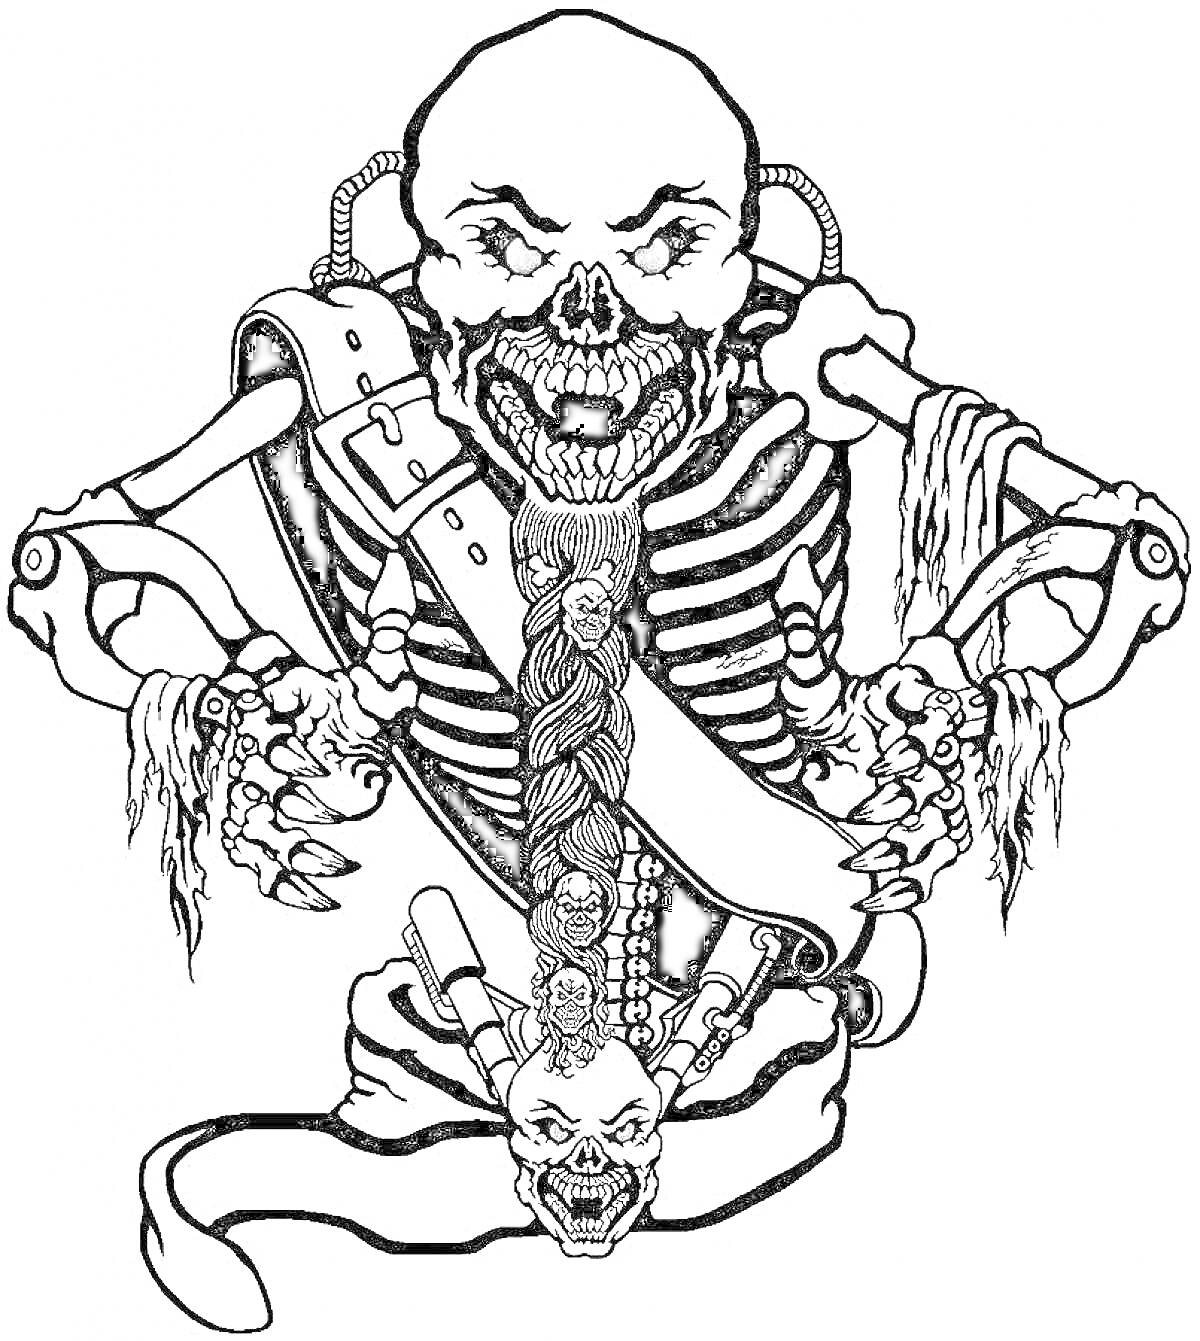 Раскраска Скелет с красными глазами, ремнем через плечо, металлическими трубками на спине и черепом на поясе